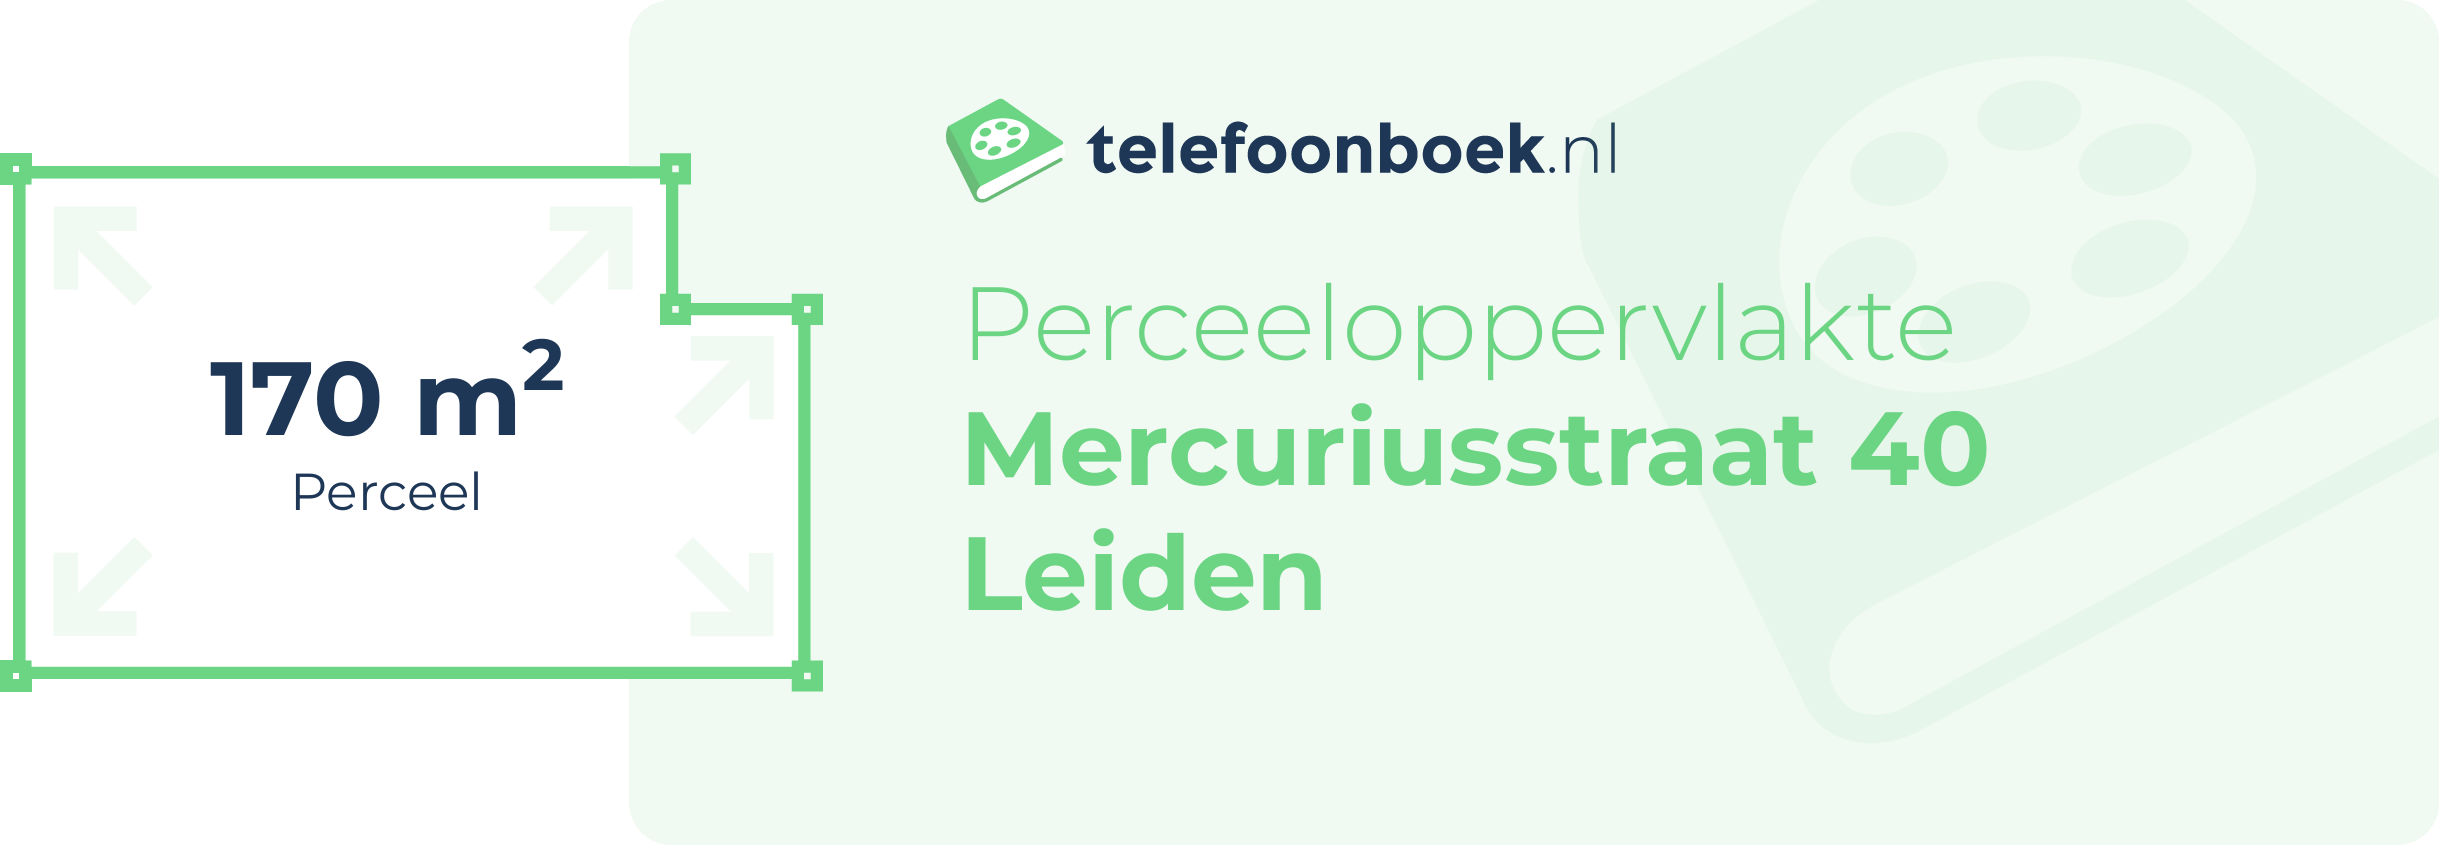 Perceeloppervlakte Mercuriusstraat 40 Leiden